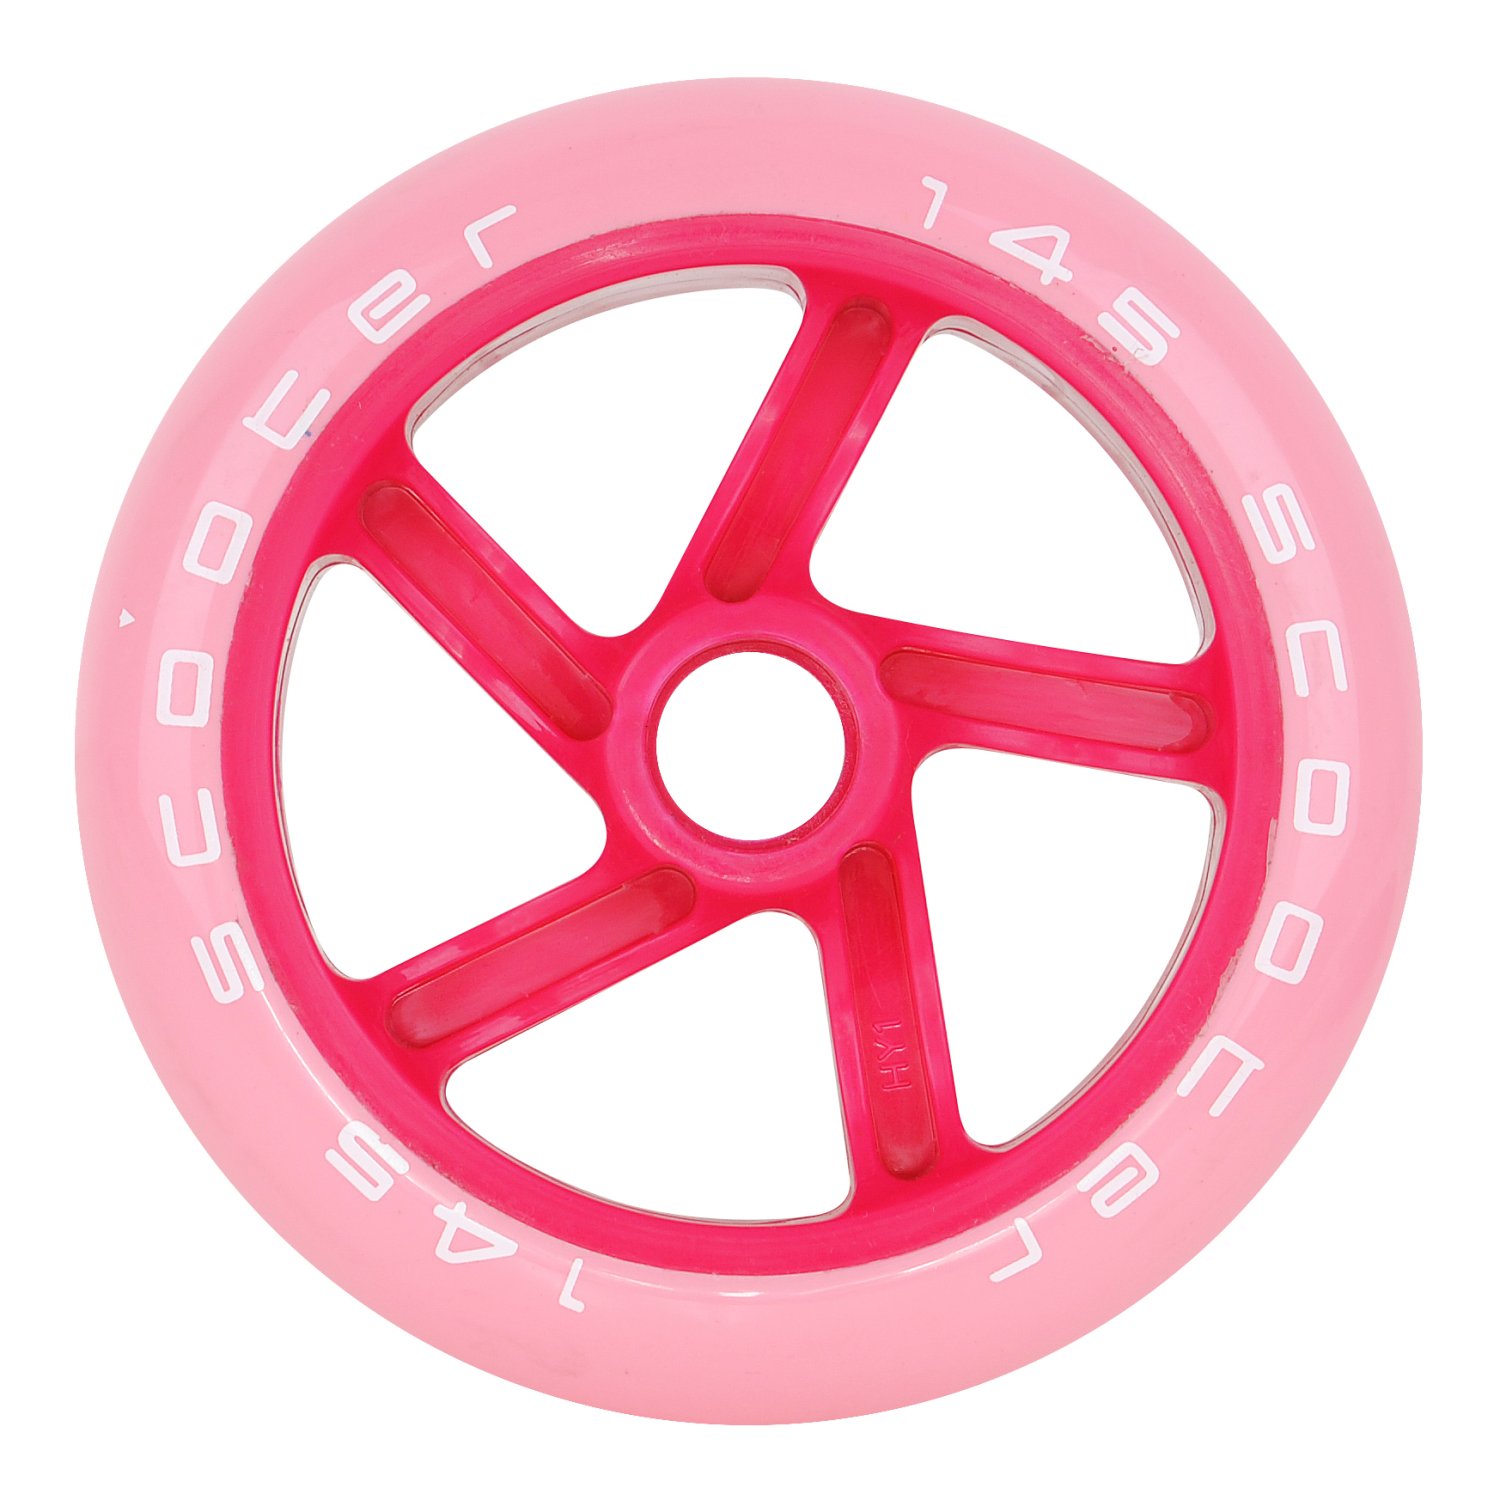 Колесо для самоката Tempish 2018 PU, 145x30 mm, 87A, розовый колесо для самоката tempish 2018 pu 100x24 mm 88a al core smoke fox abec 9 chrom